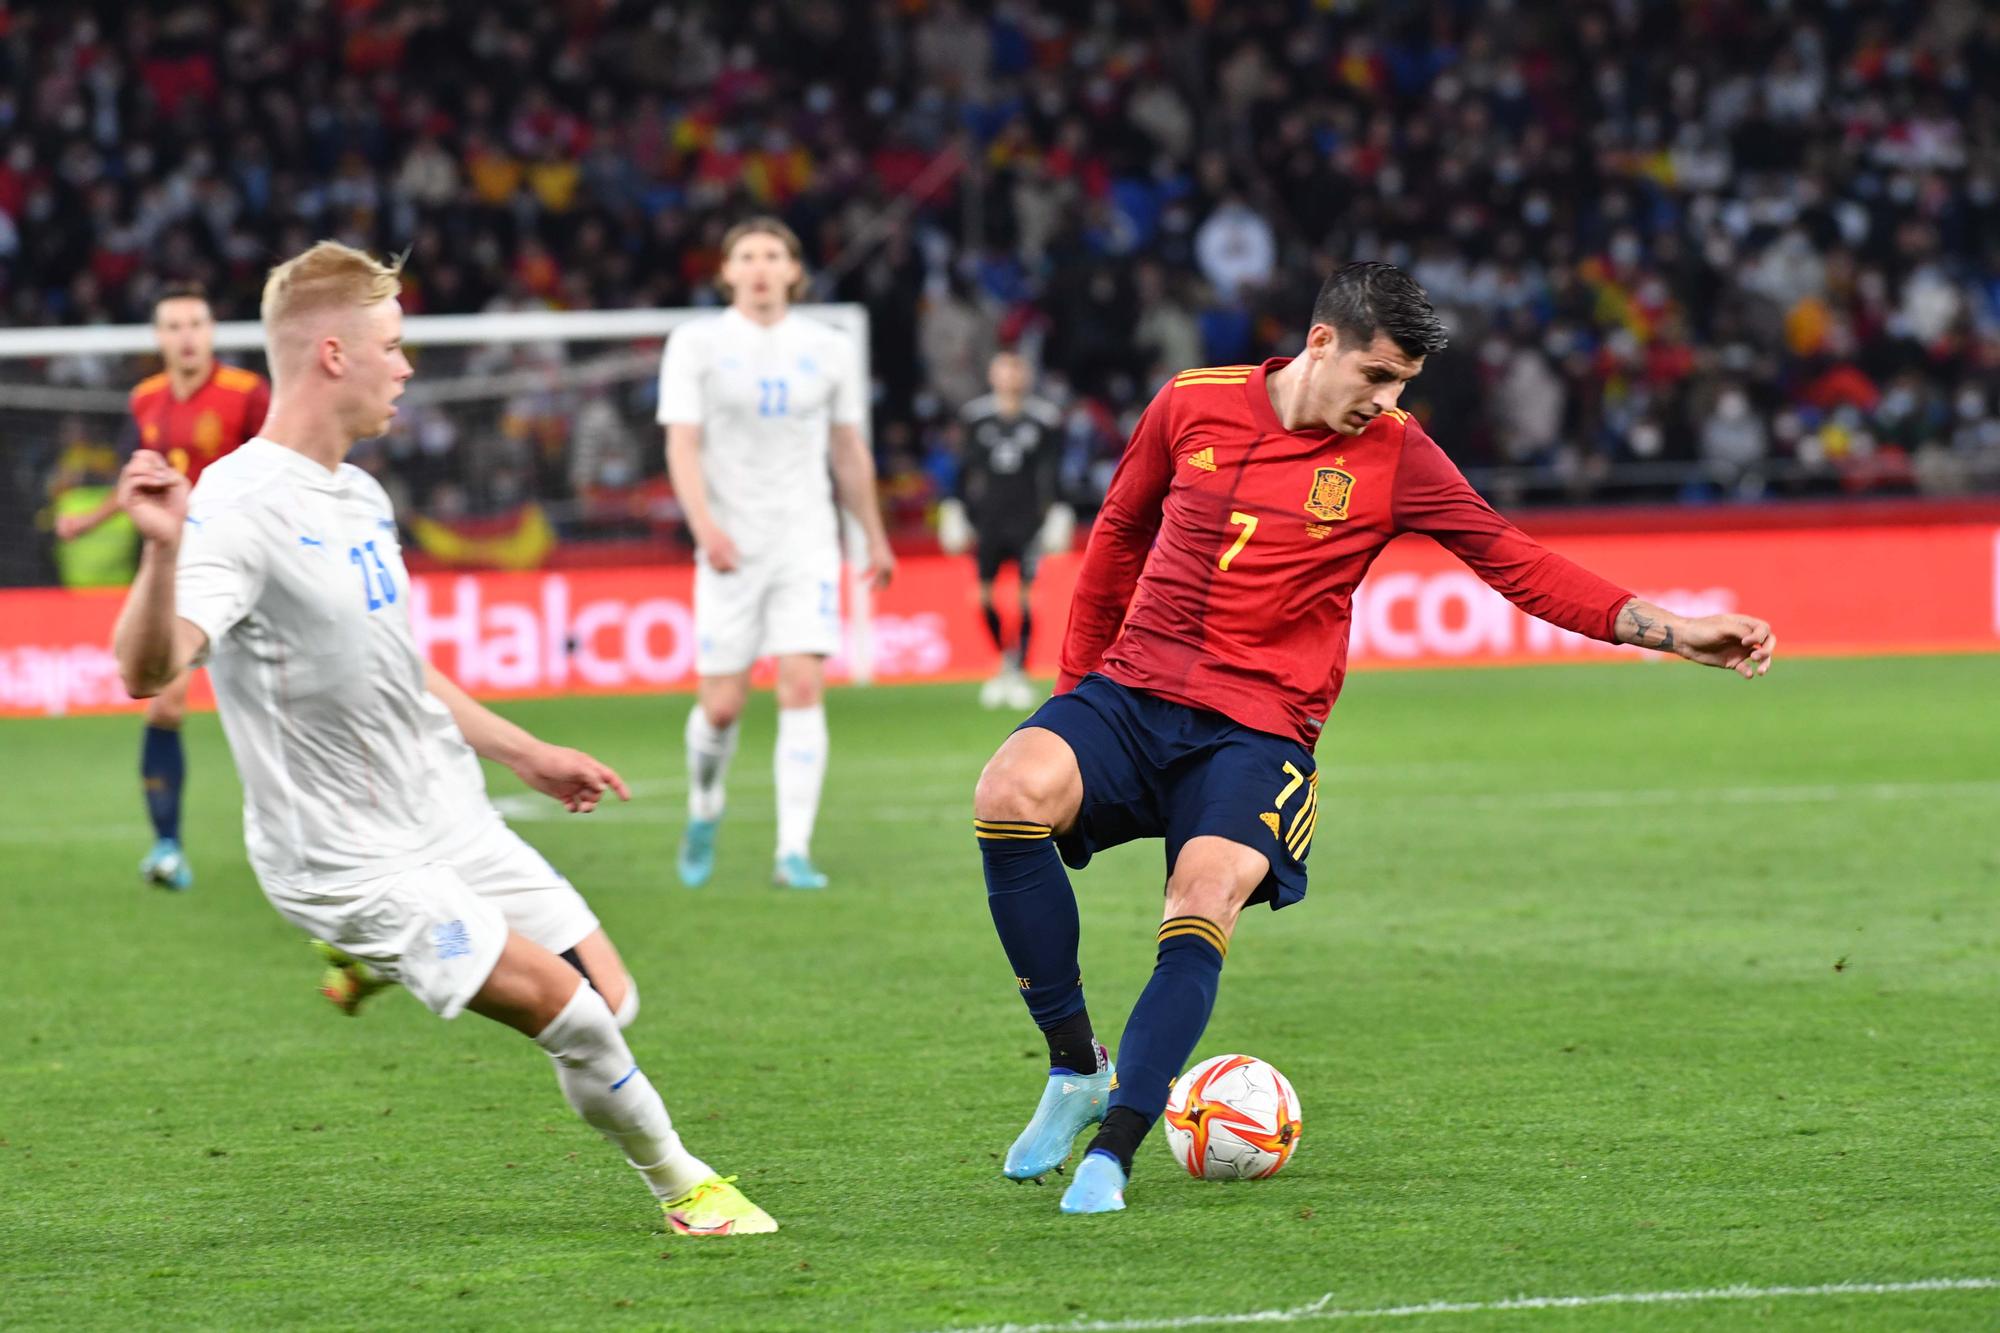 España golea a Islandia (5-0) en A Coruña con Riazor repleto